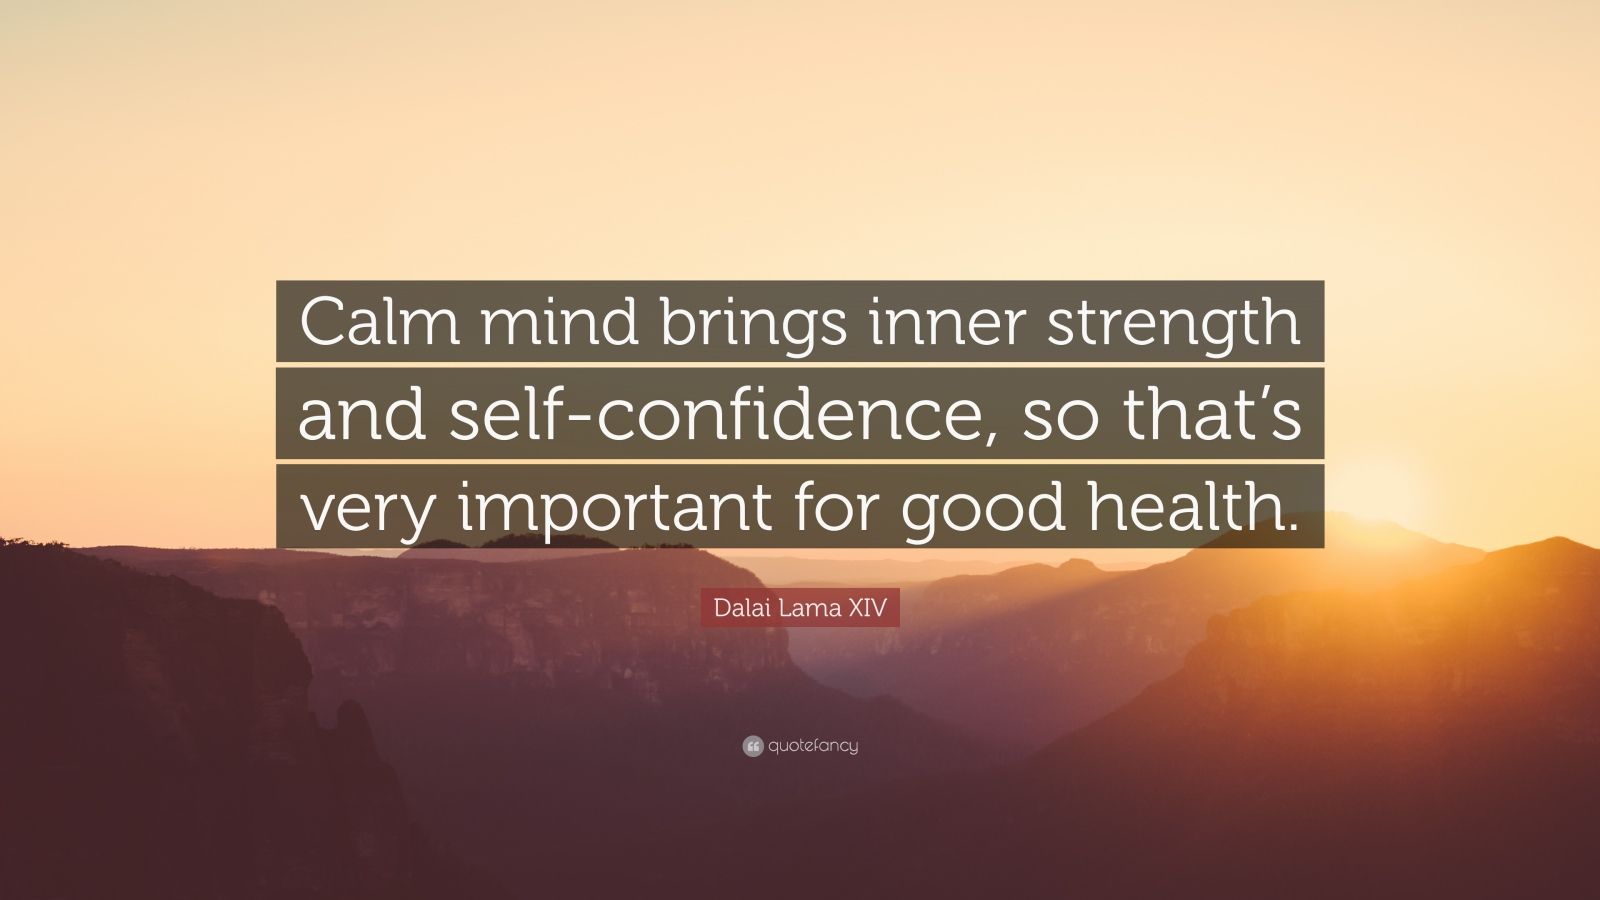 Dalai Lama XIV Quote: “Calm mind brings inner strength and self